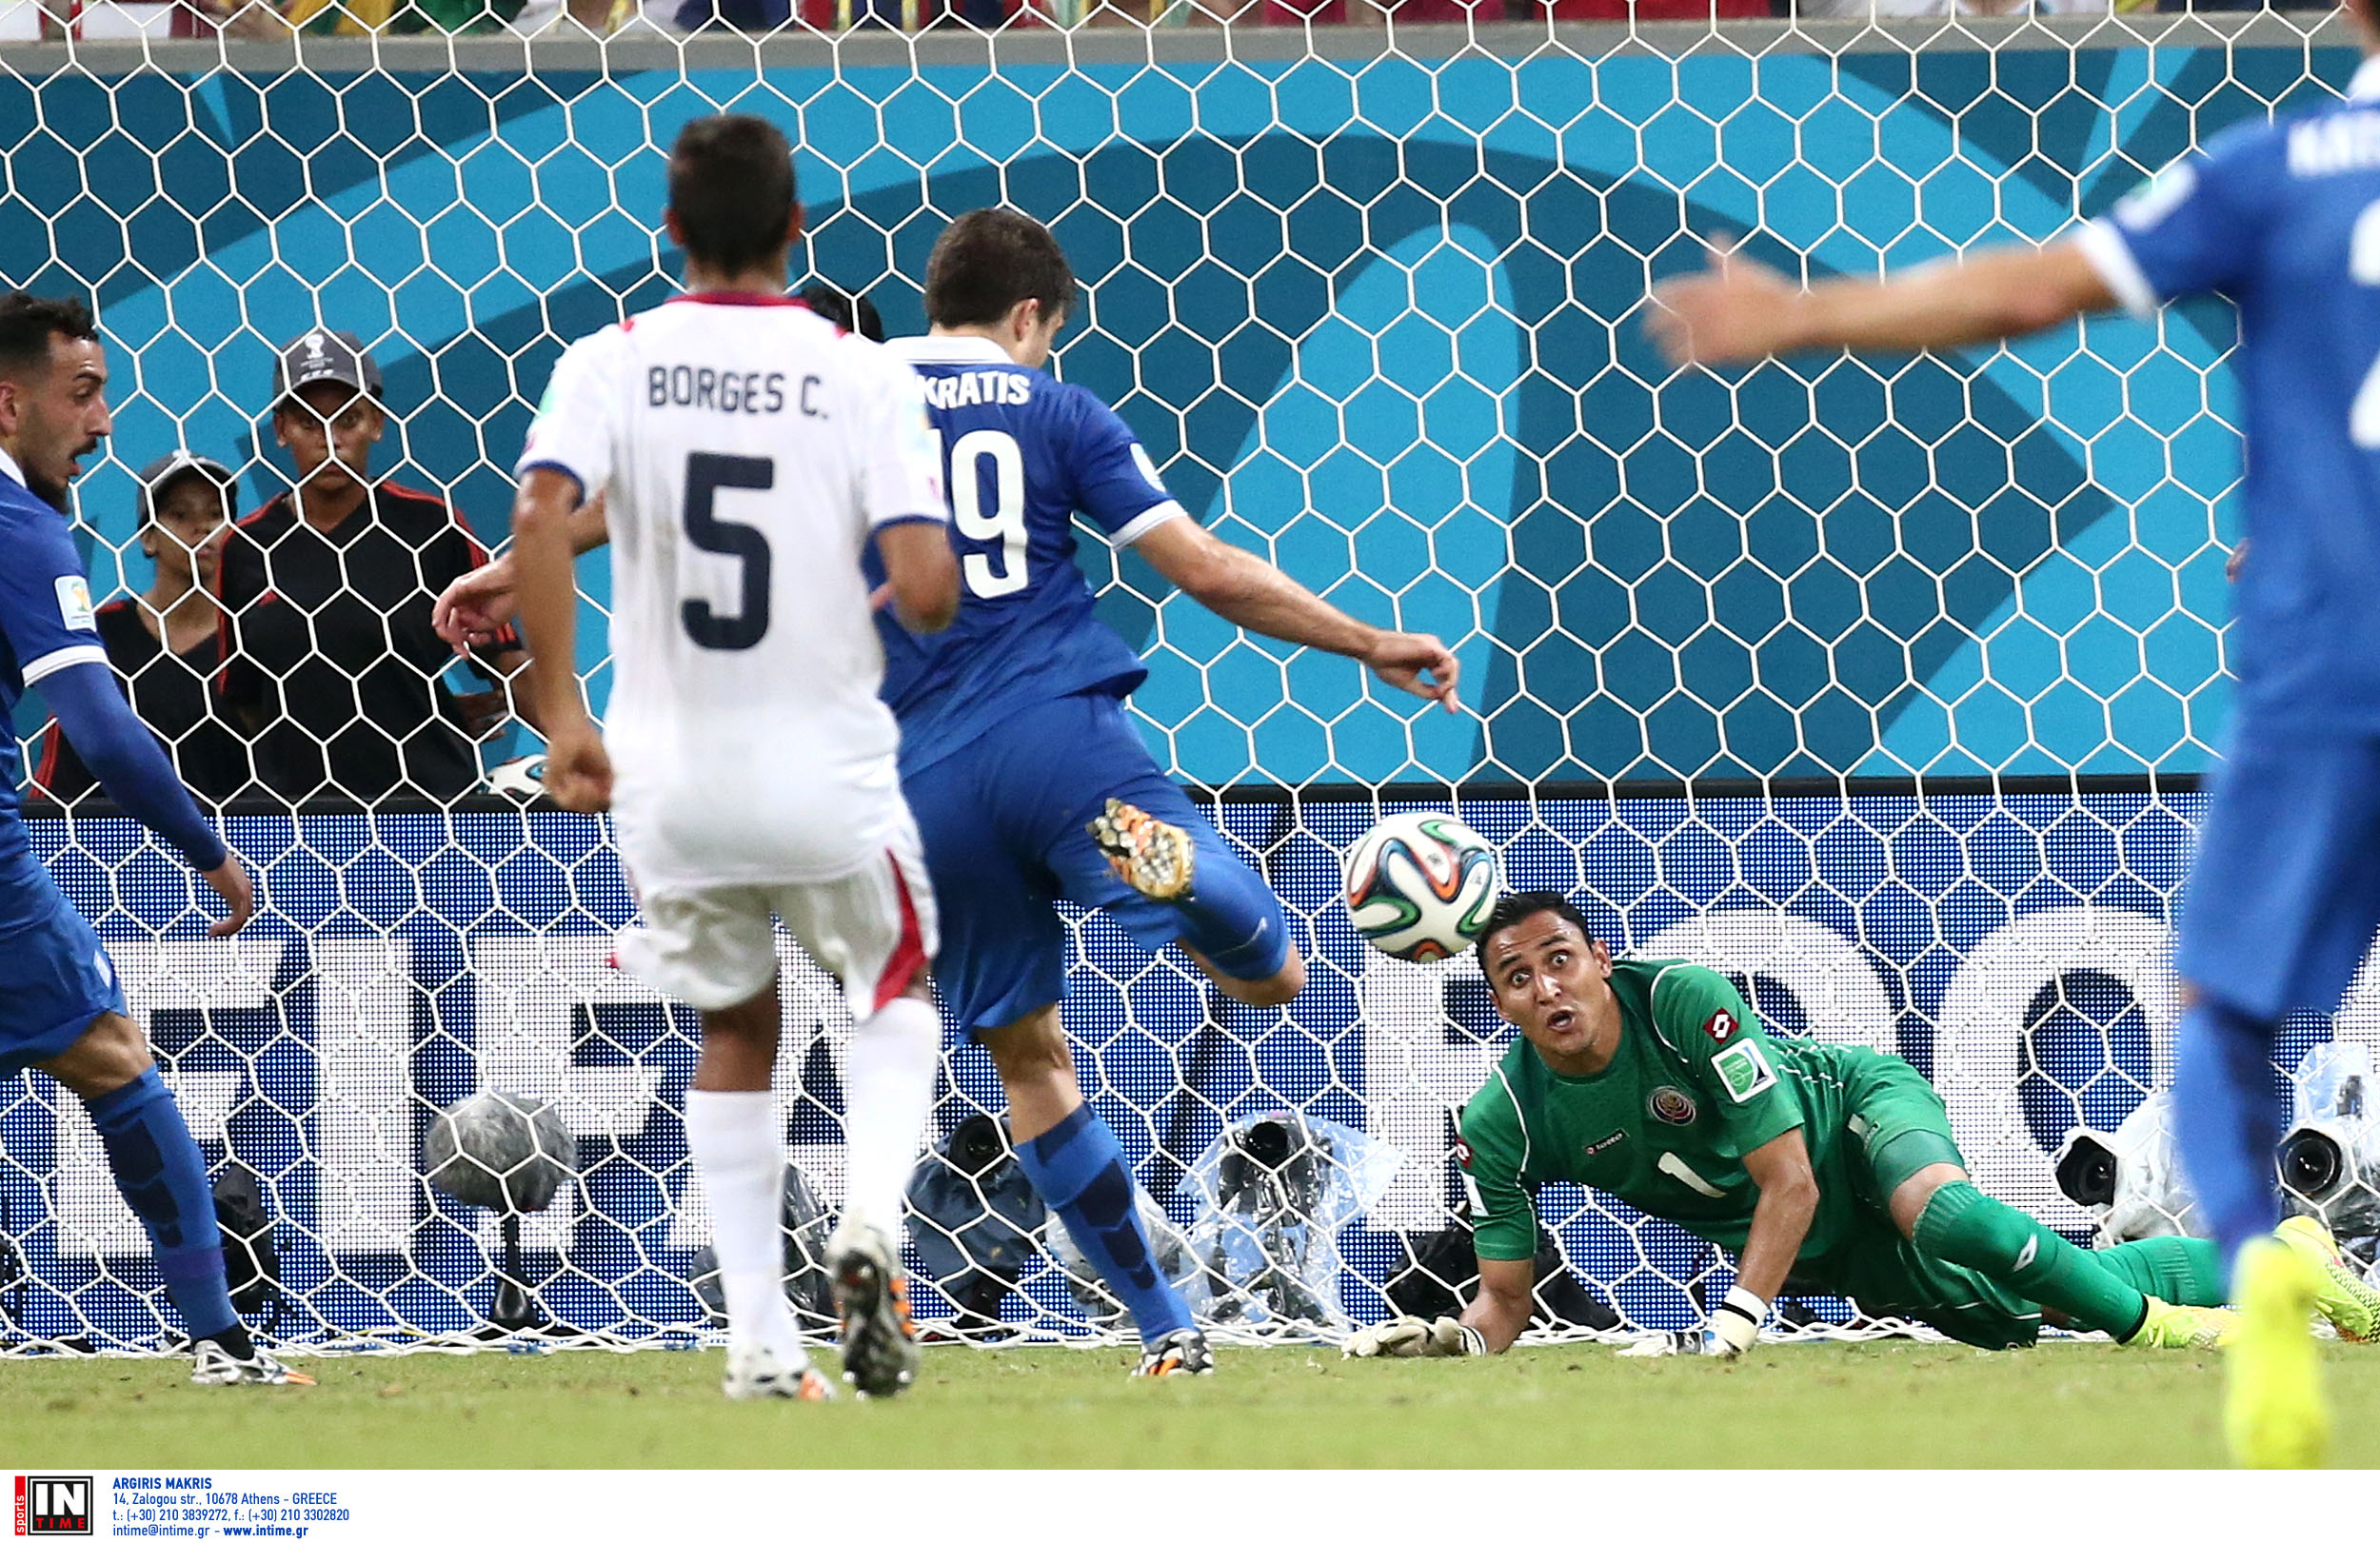 Mουντιάλ 2014: Ελλάδα – Κόστα Ρίκα (1-1 και στην παράταση) αλλά 3-5 στα πέναλτι